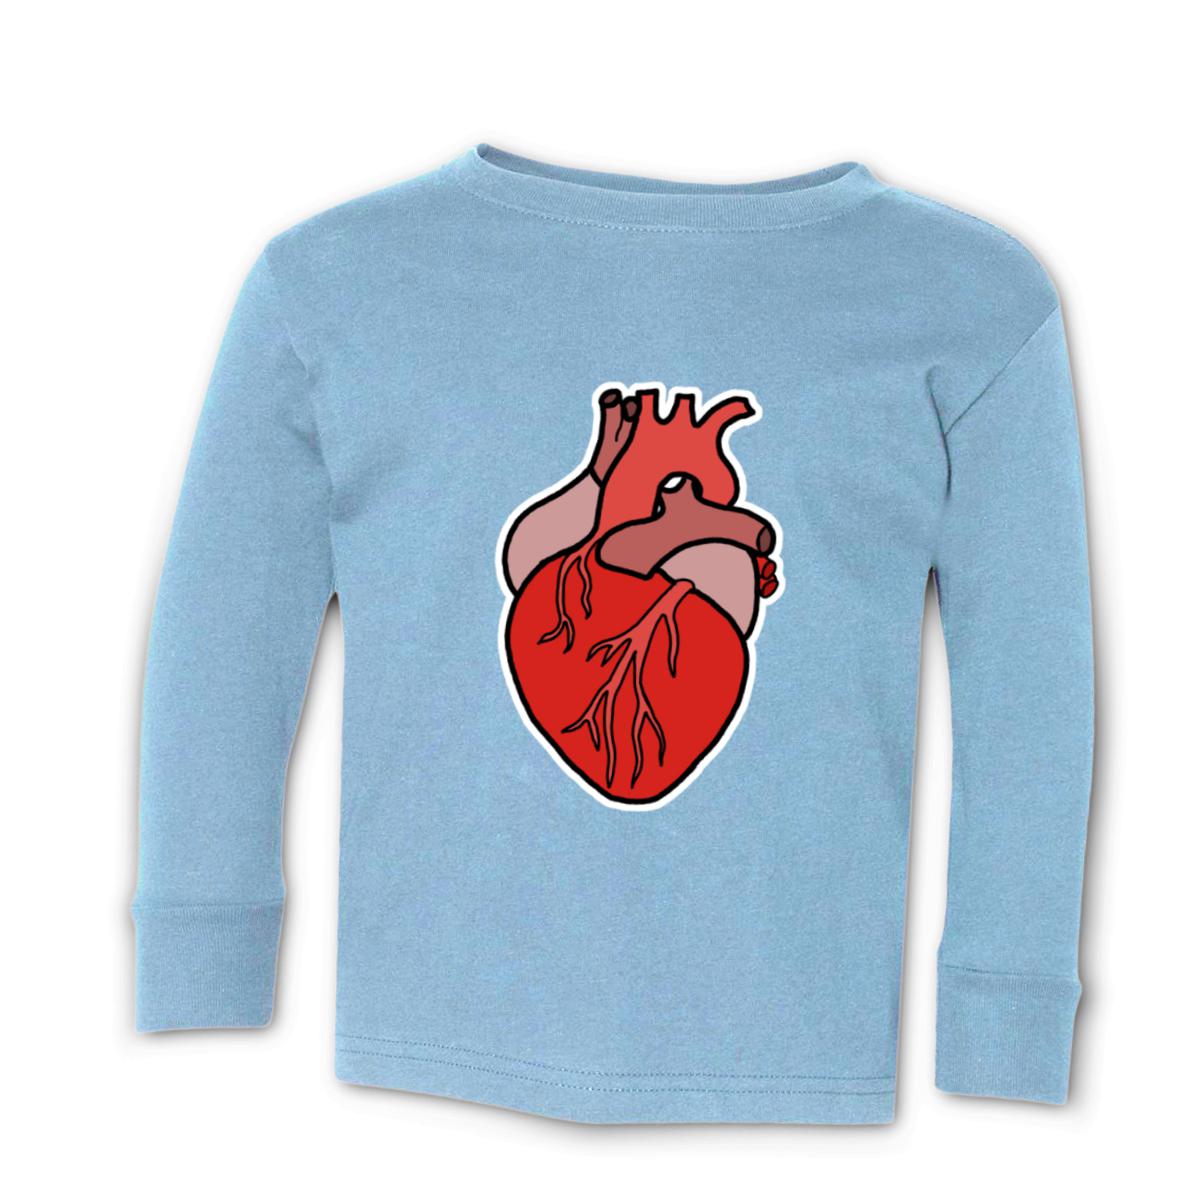 Illustrative Heart Toddler Long Sleeve Tee 56T light-blue